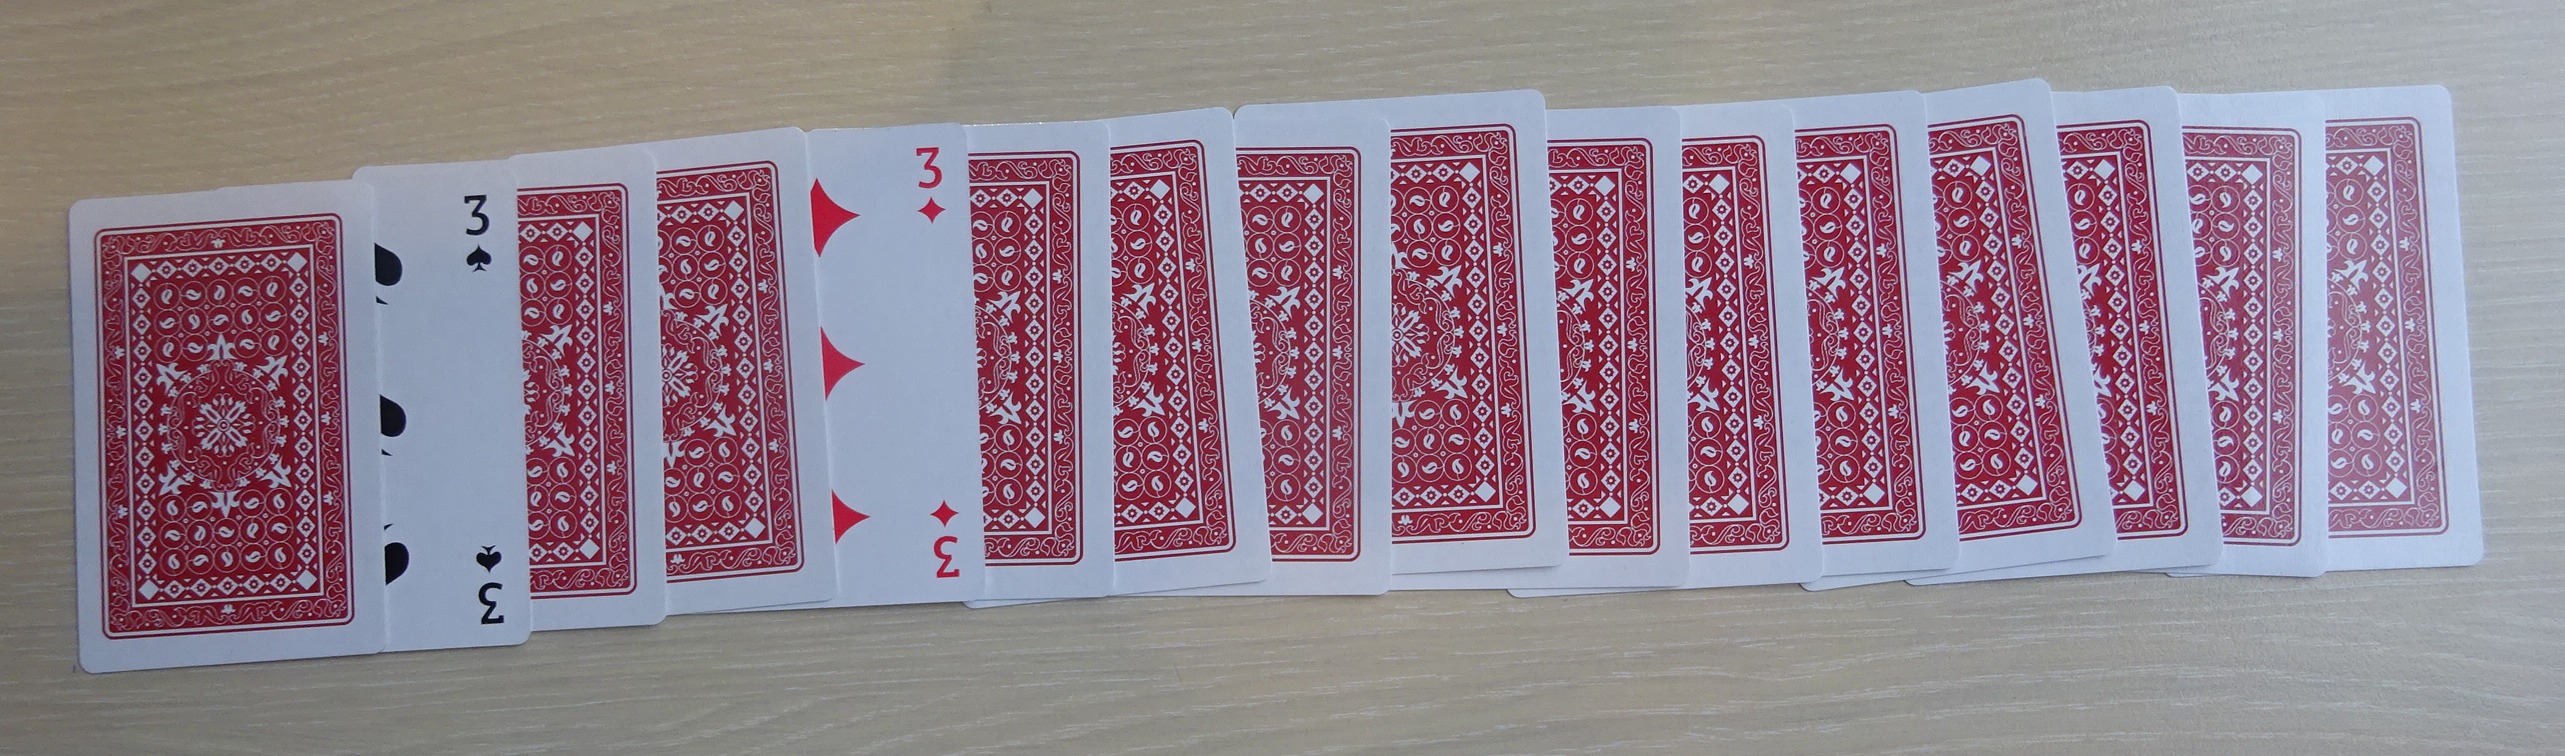 kaartentruc